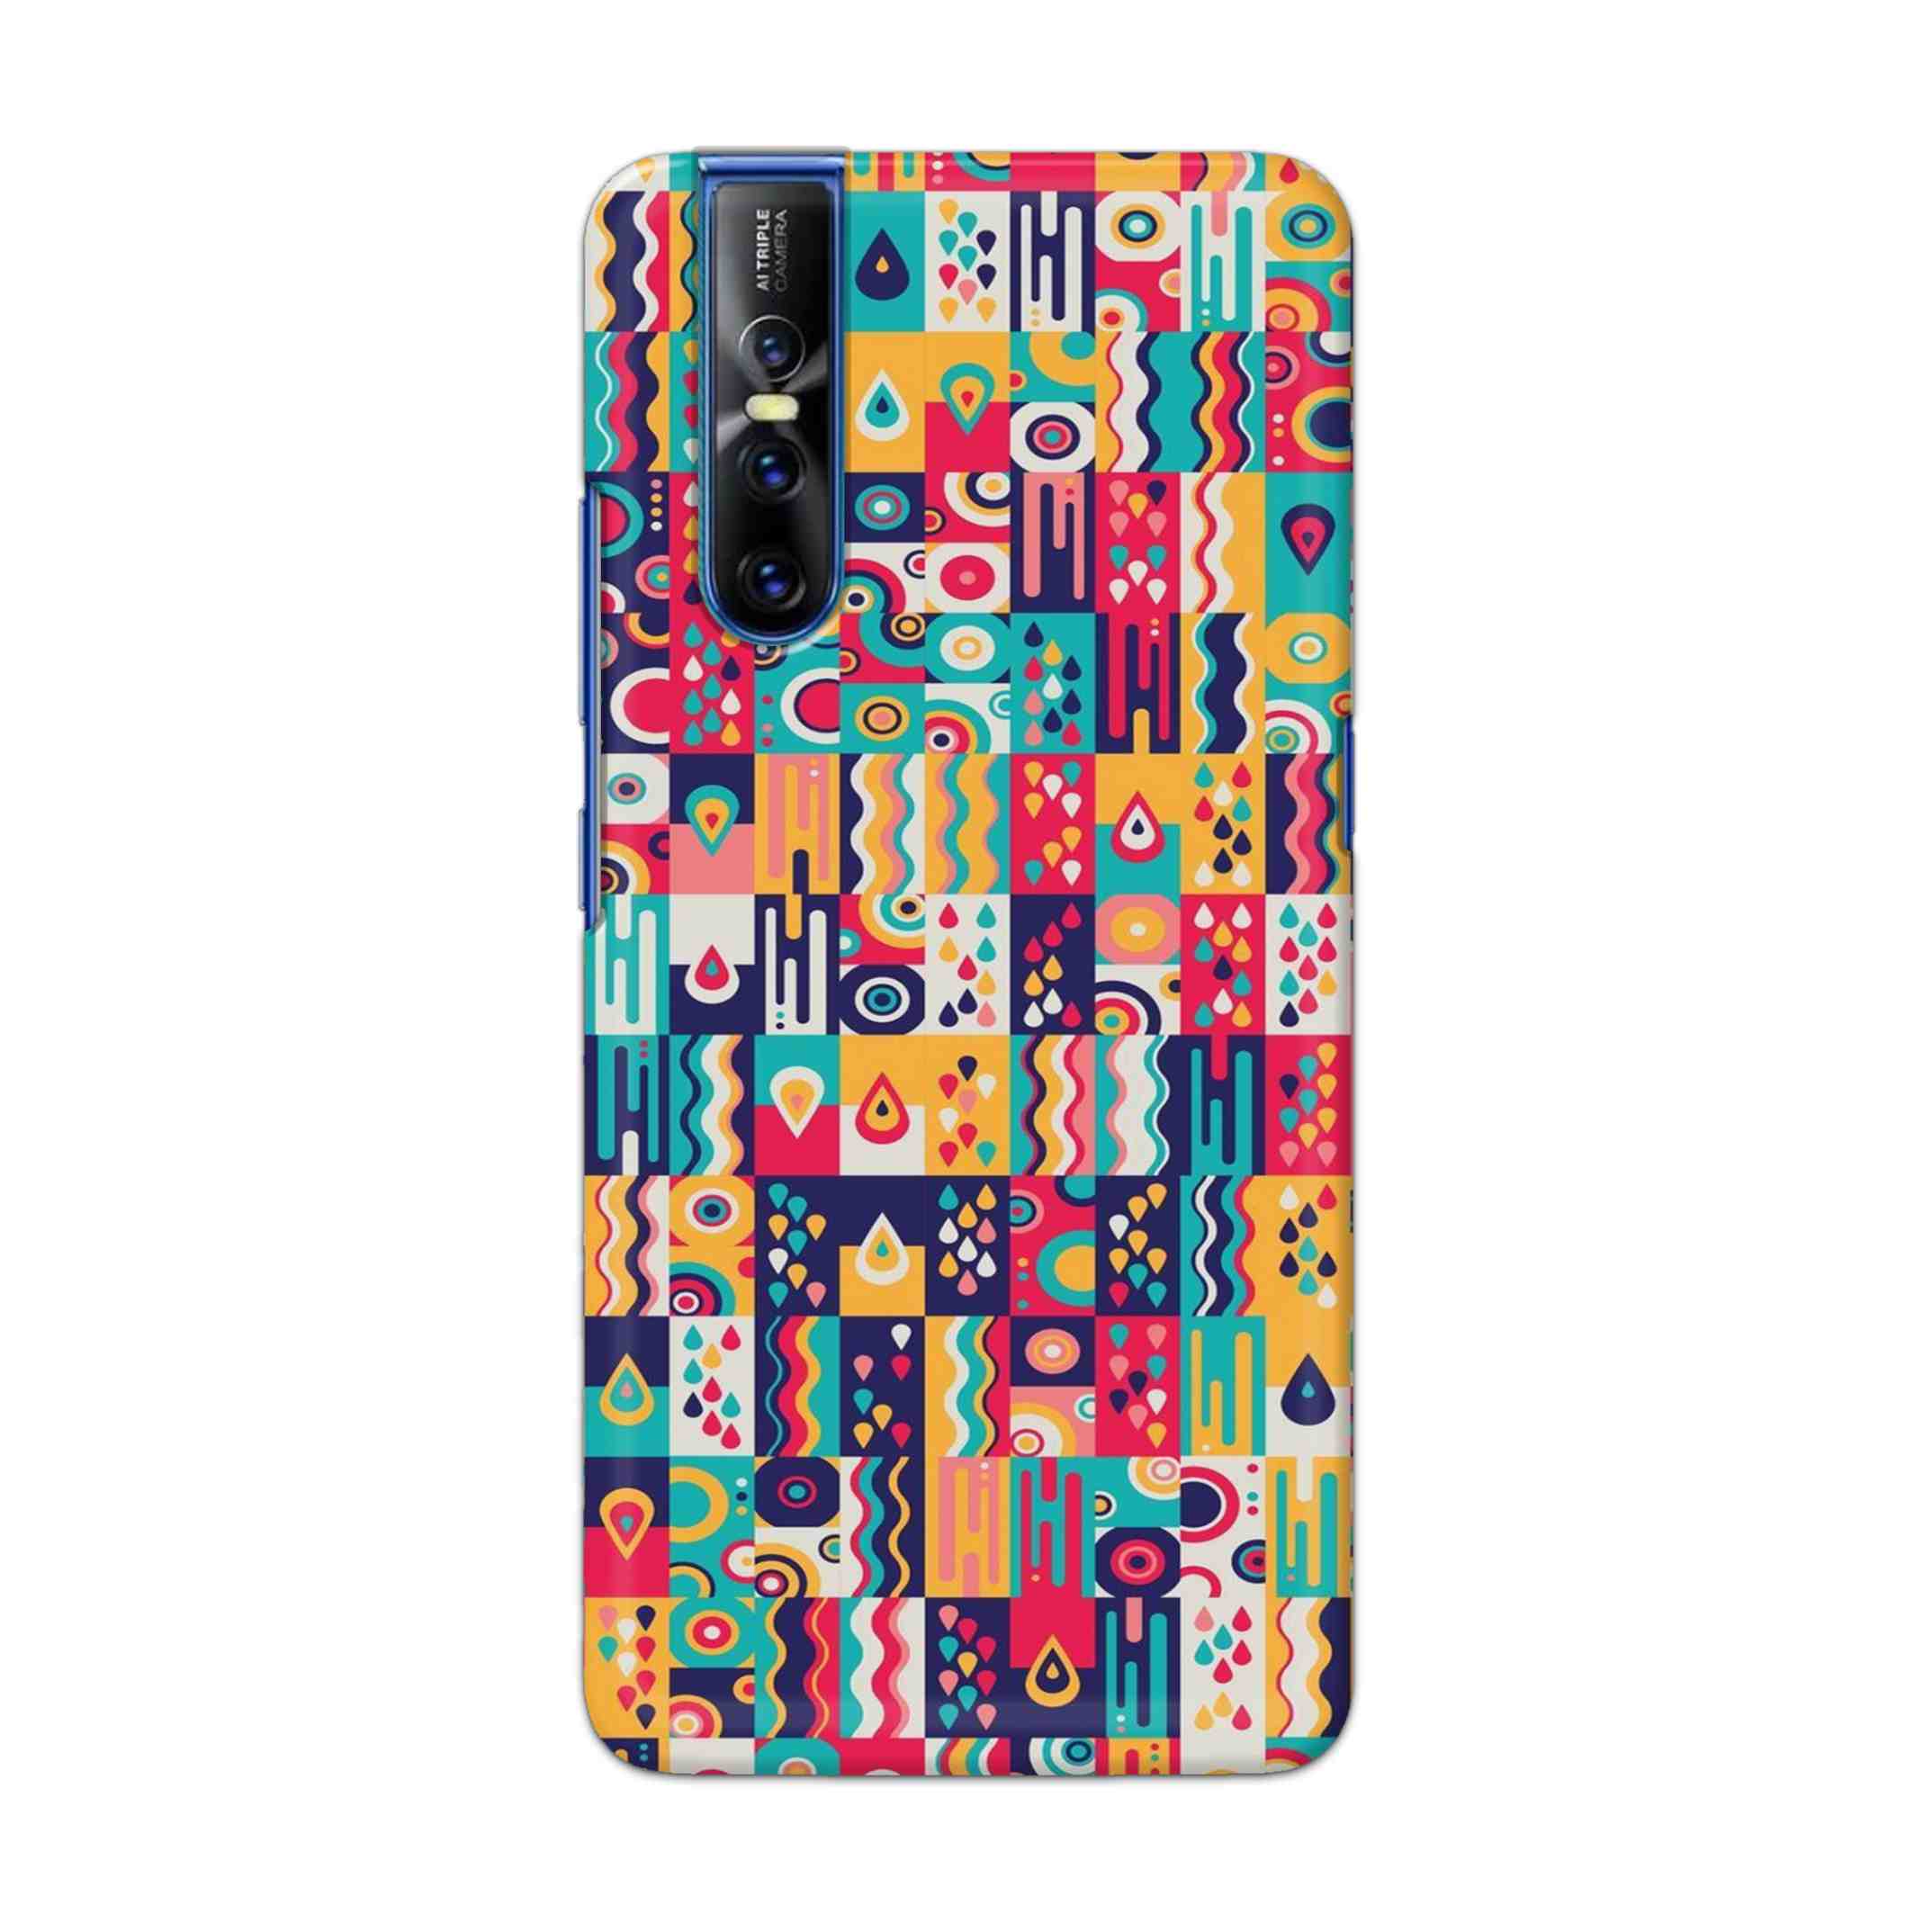 Buy Art Hard Back Mobile Phone Case Cover For Vivo V15 Pro Online